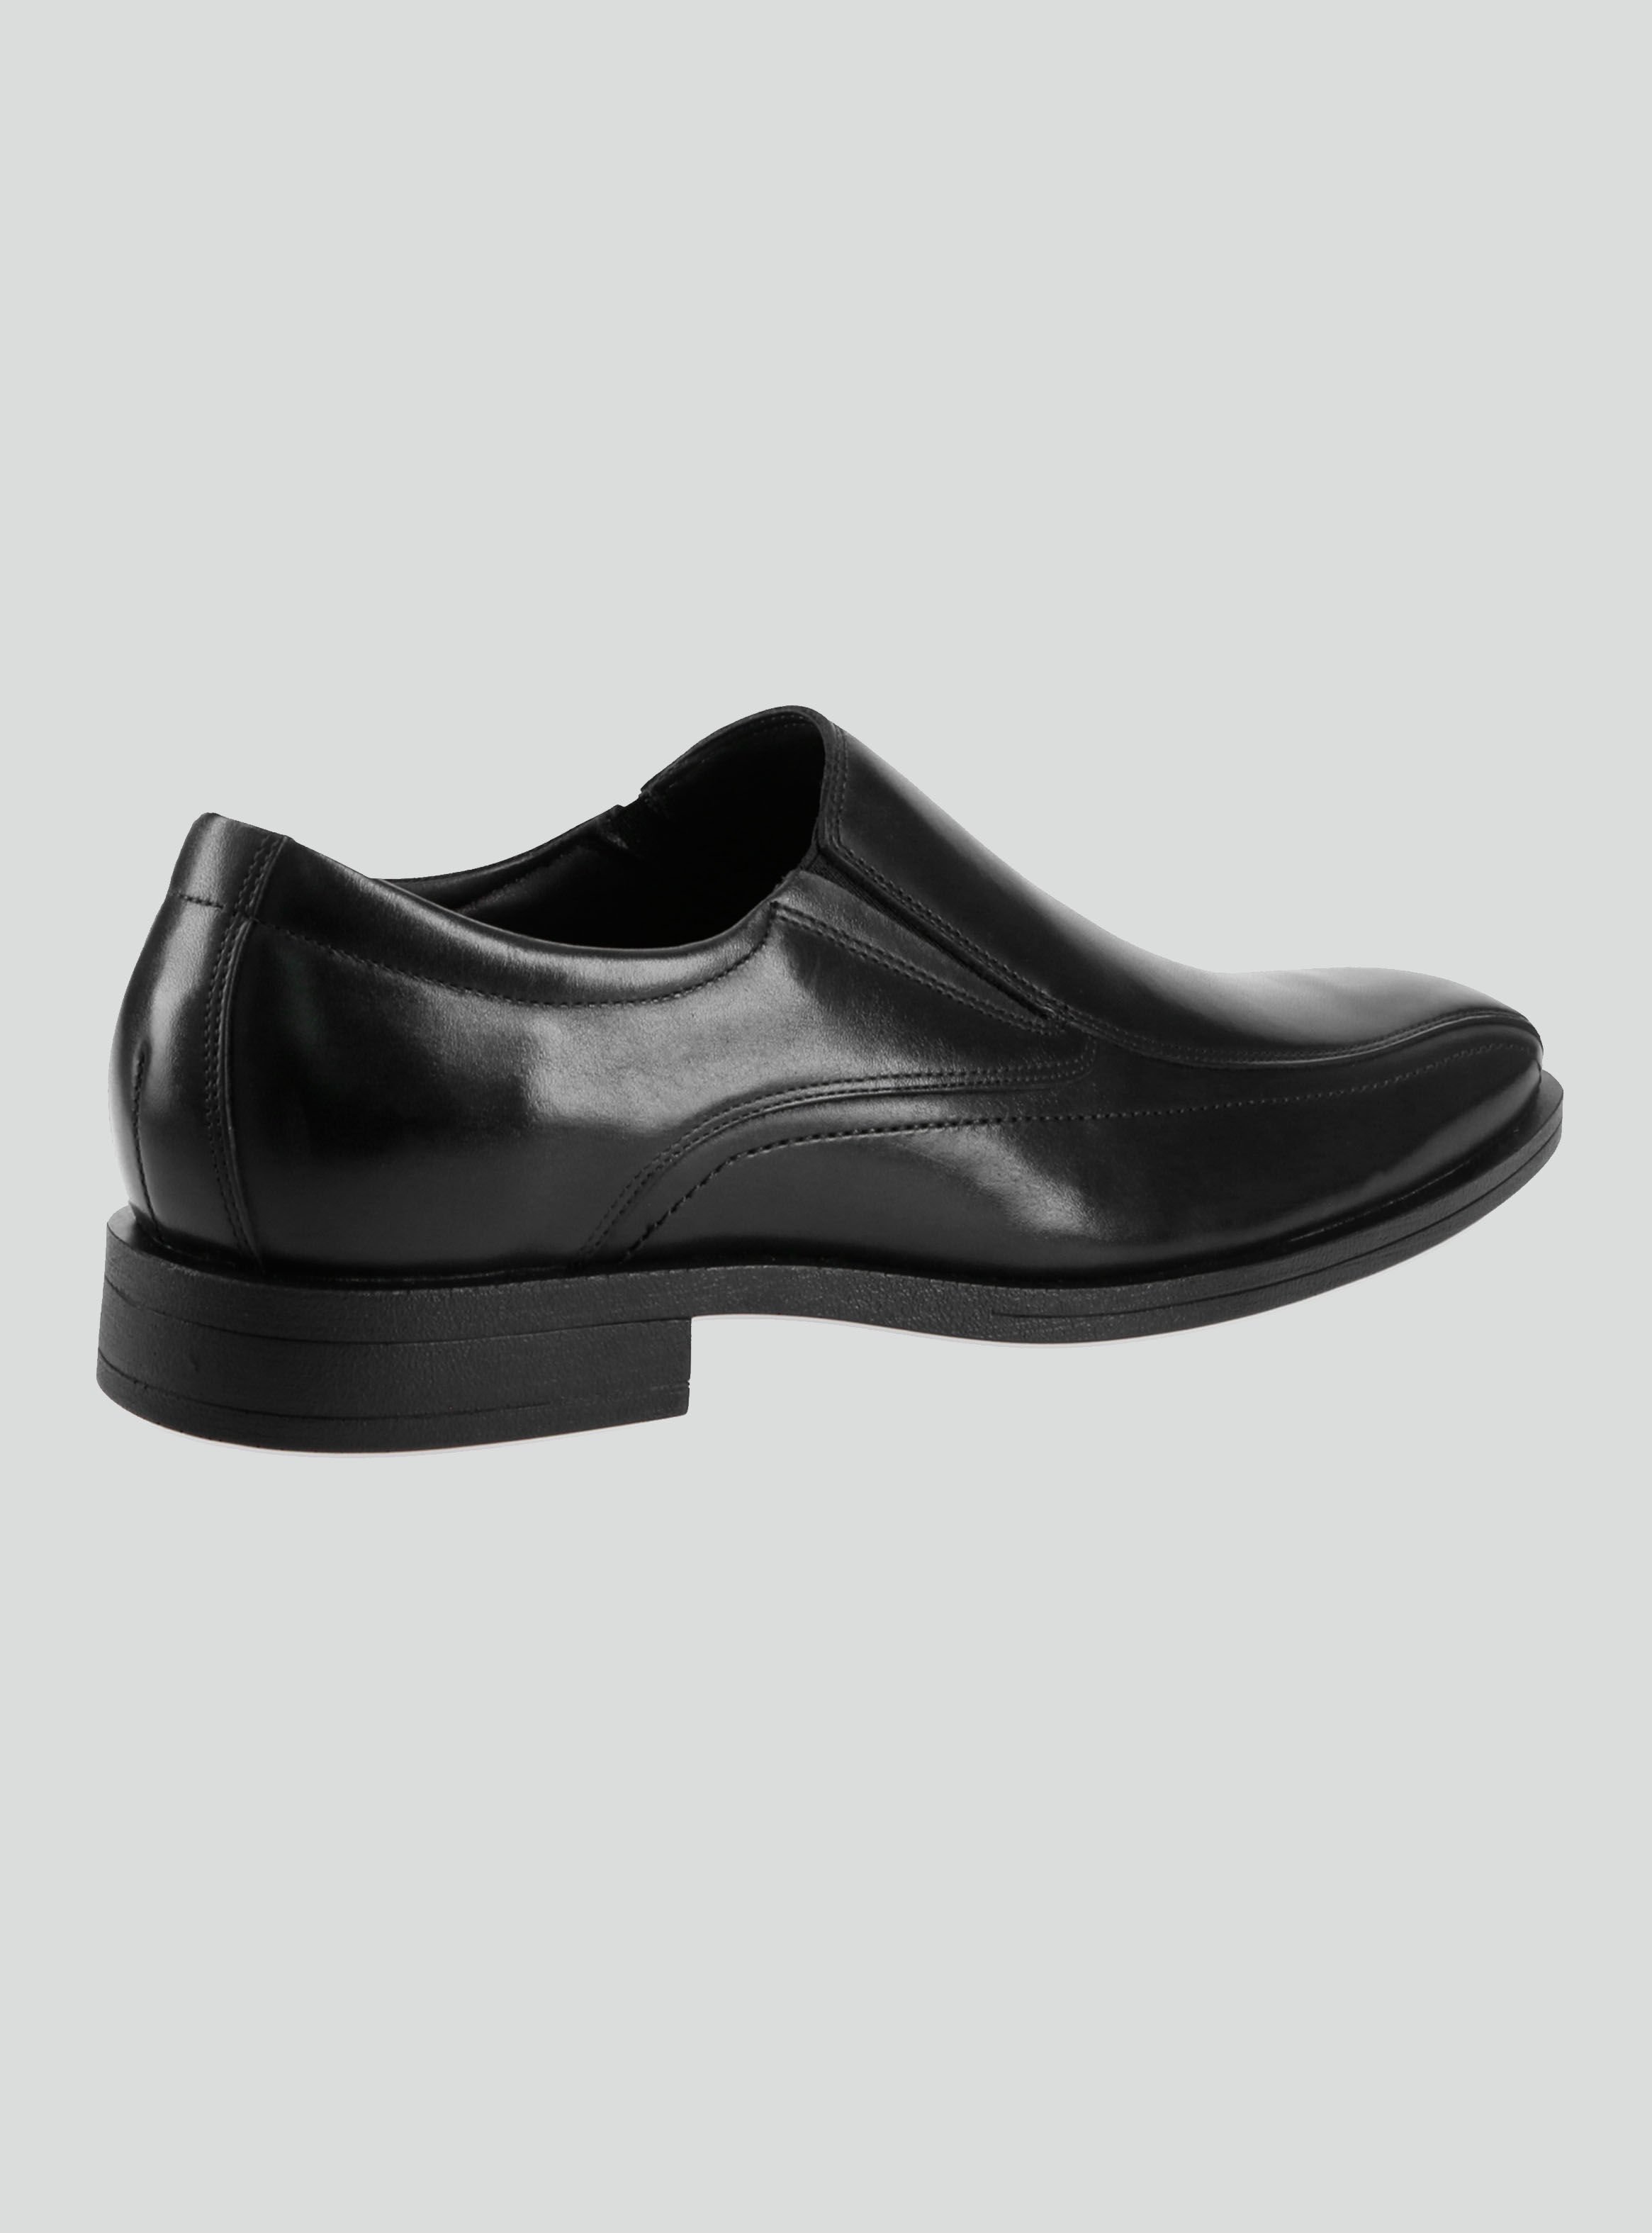 Zapato Guante Vestir Cierre Slip On Cuero Negro Hombre - Zapatos de Vestir  | Paris.cl